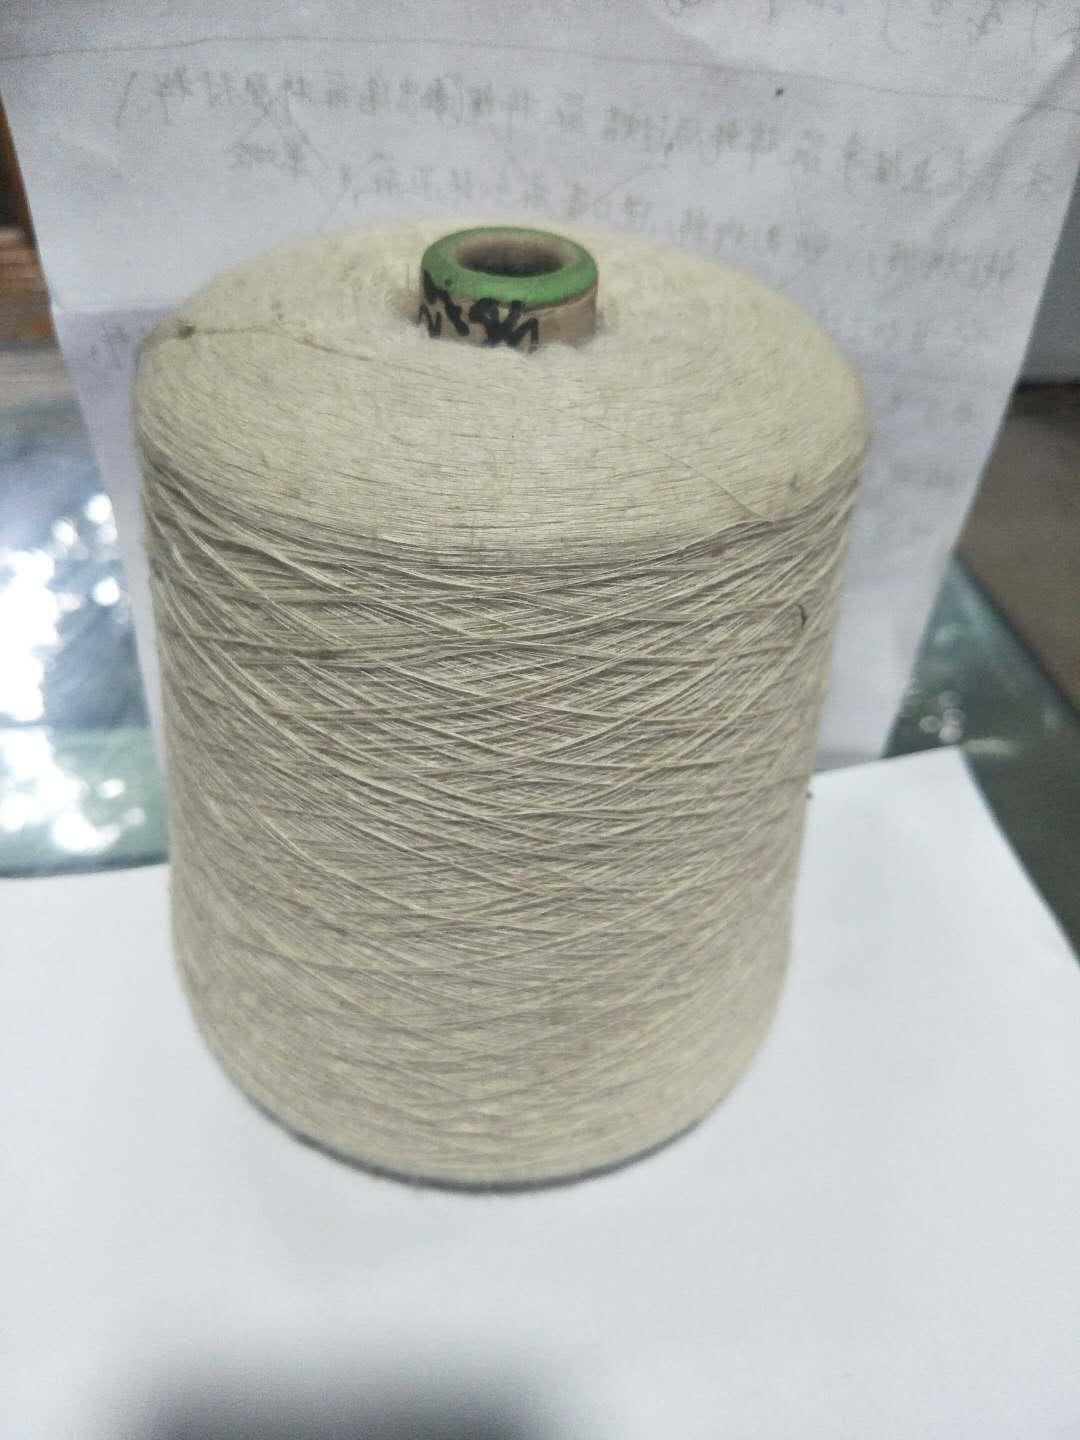 厂家现货供应胚色麻棉绳各种粗细规格品种齐**可按客户